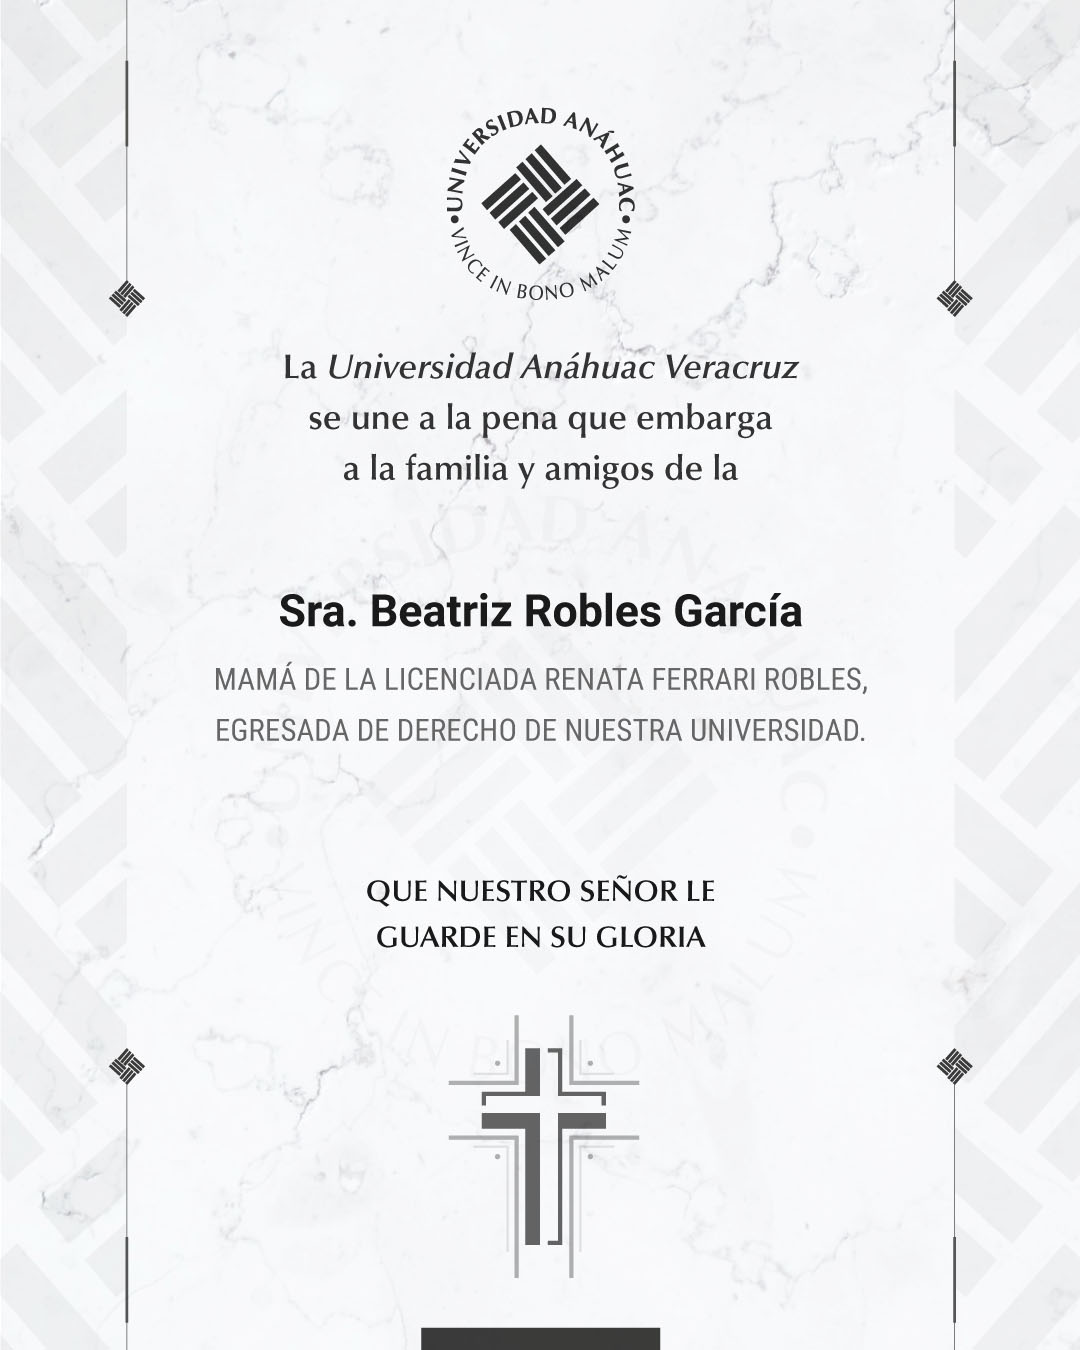 10 / 18 - Sra. Beatriz Robles García